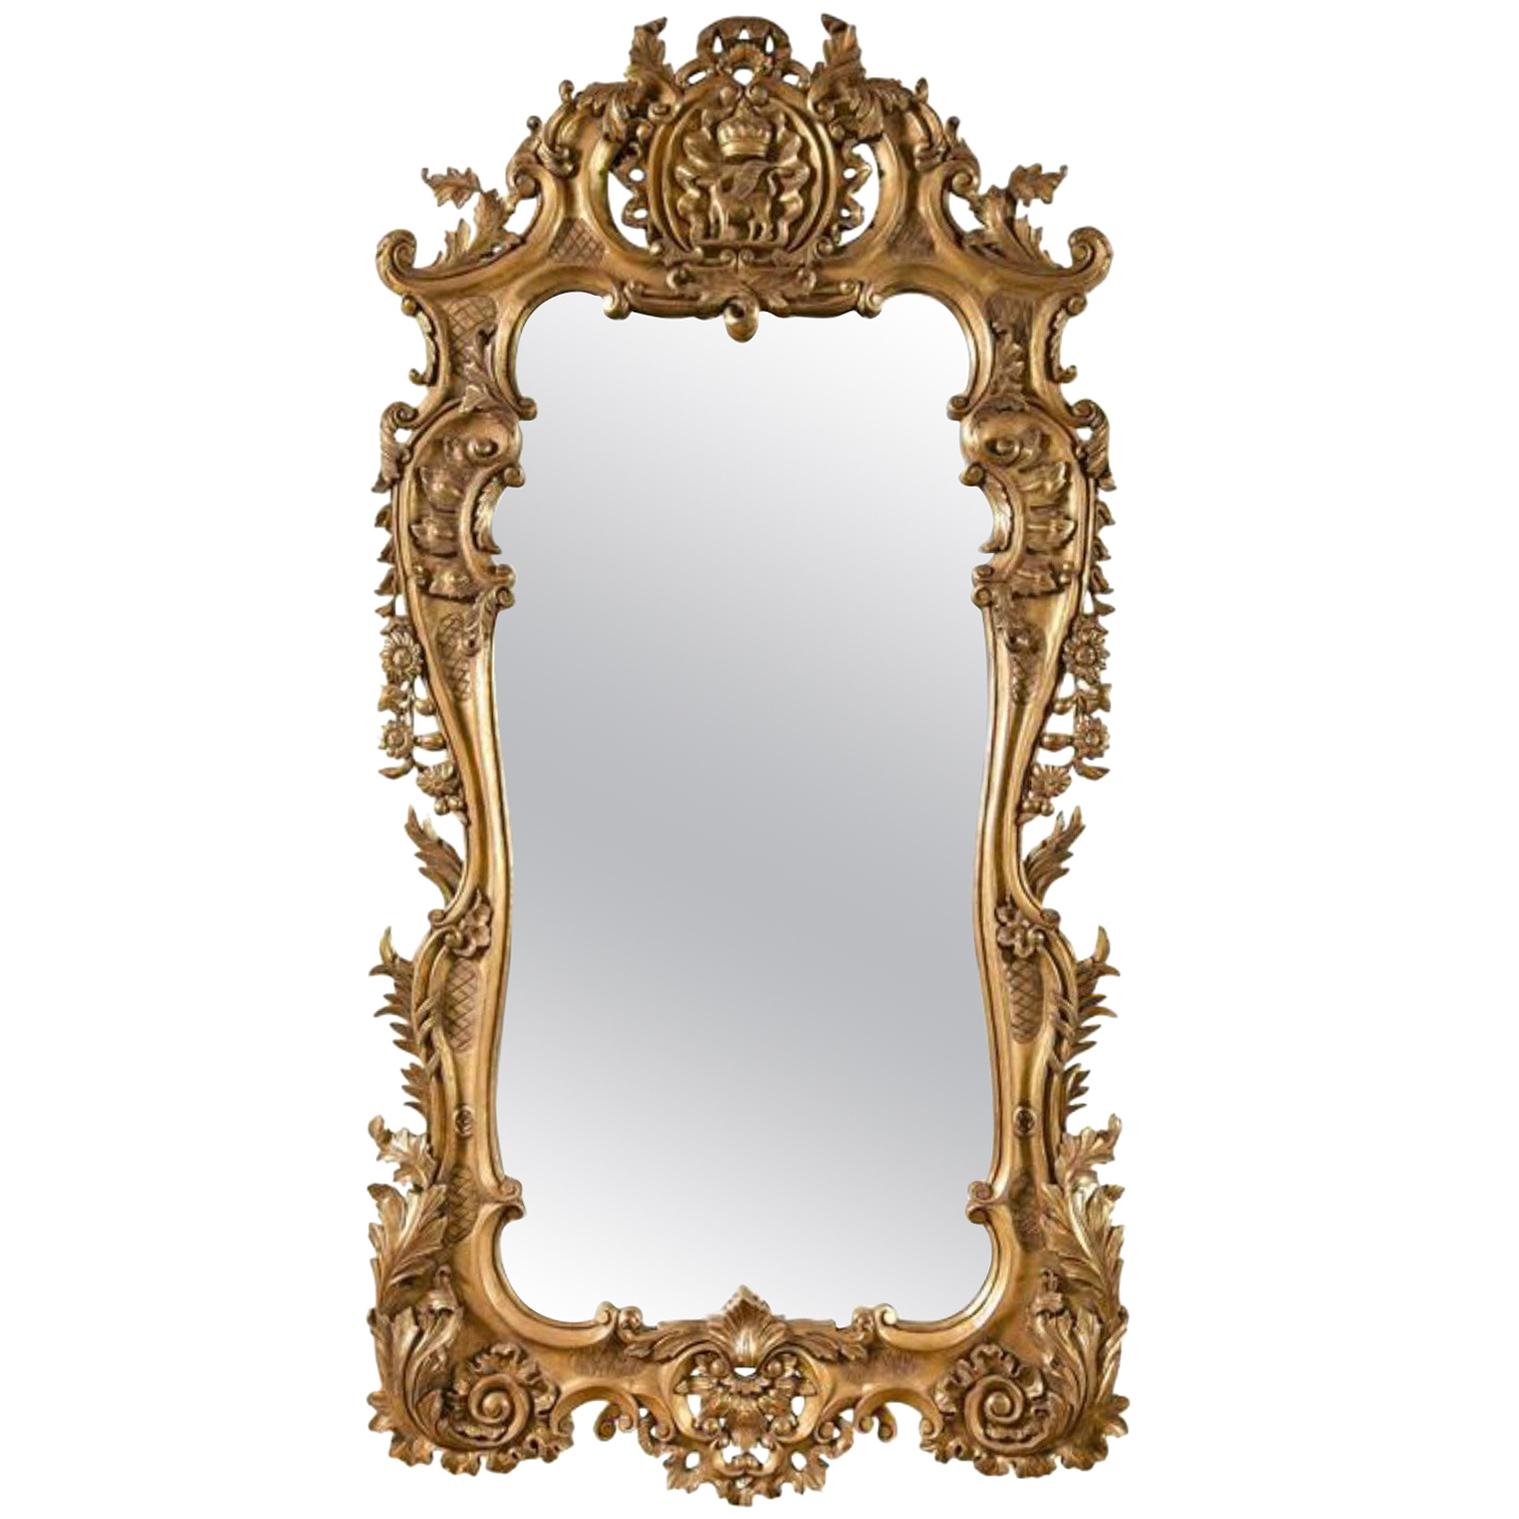 Monumental miroir en bois doré de style Louis XV Détails exquis